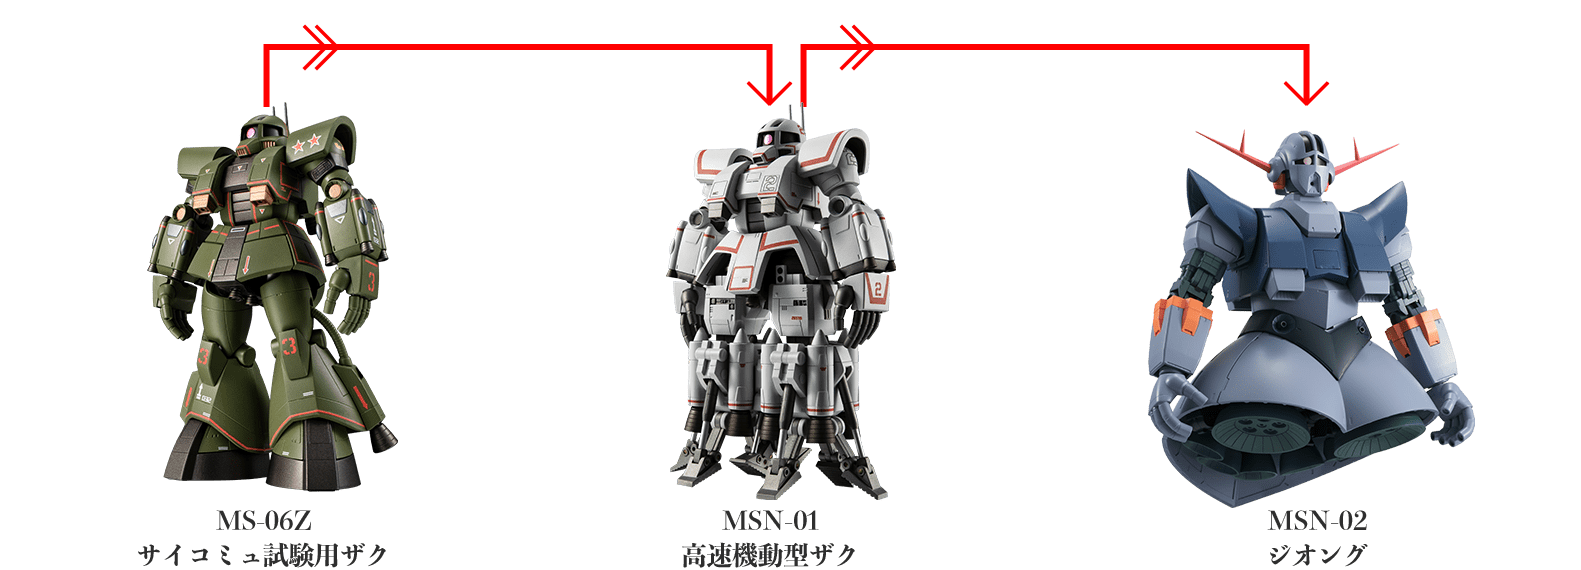 MS-06Z サイコミュ試験用ザク
MSN-01 高速機動型ザク
MSN-02 ジオング